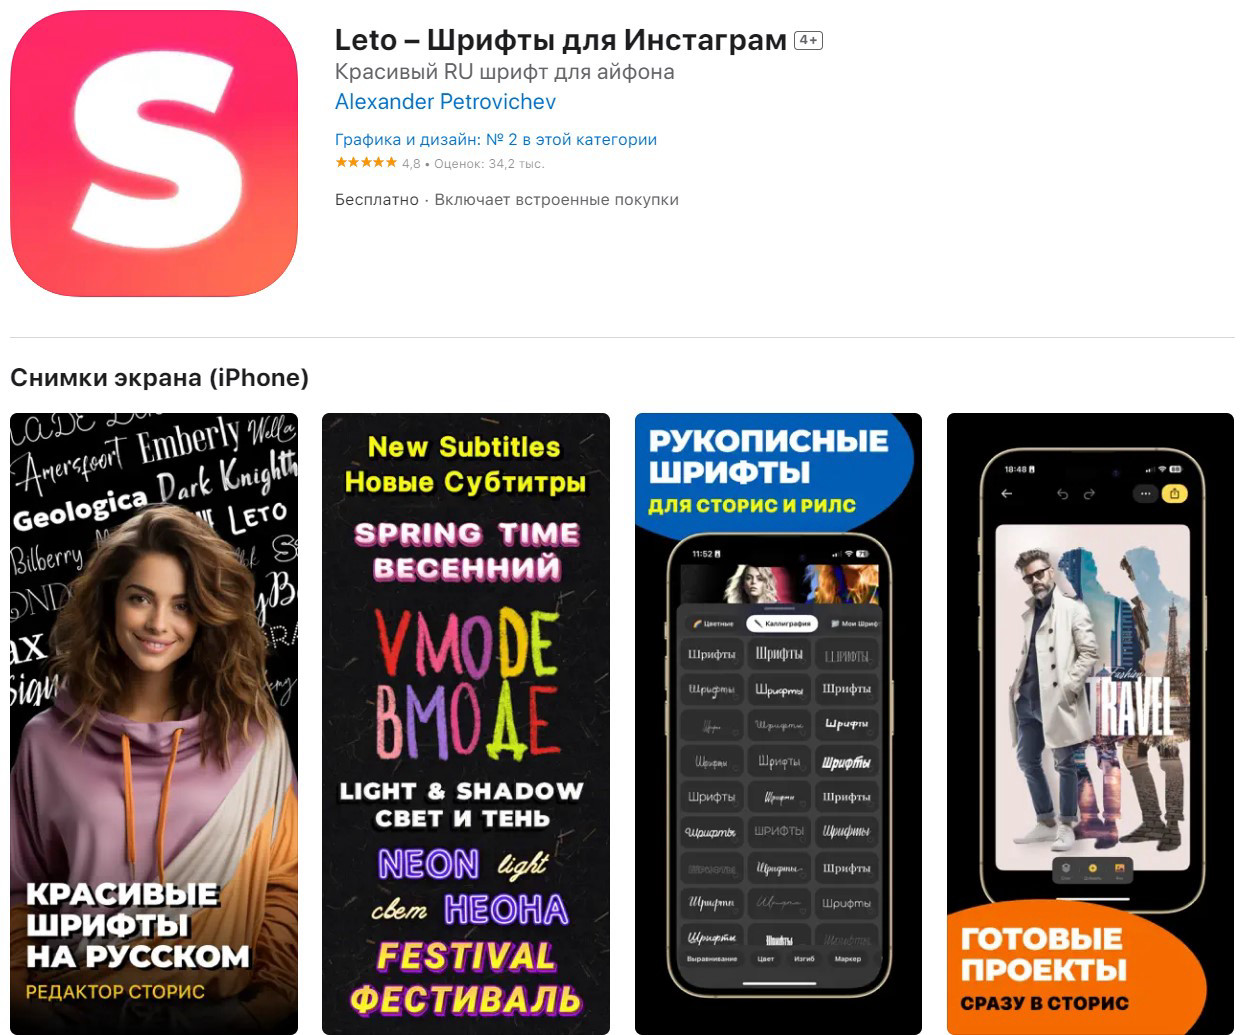 Приложение Leto (для iOS и Android)